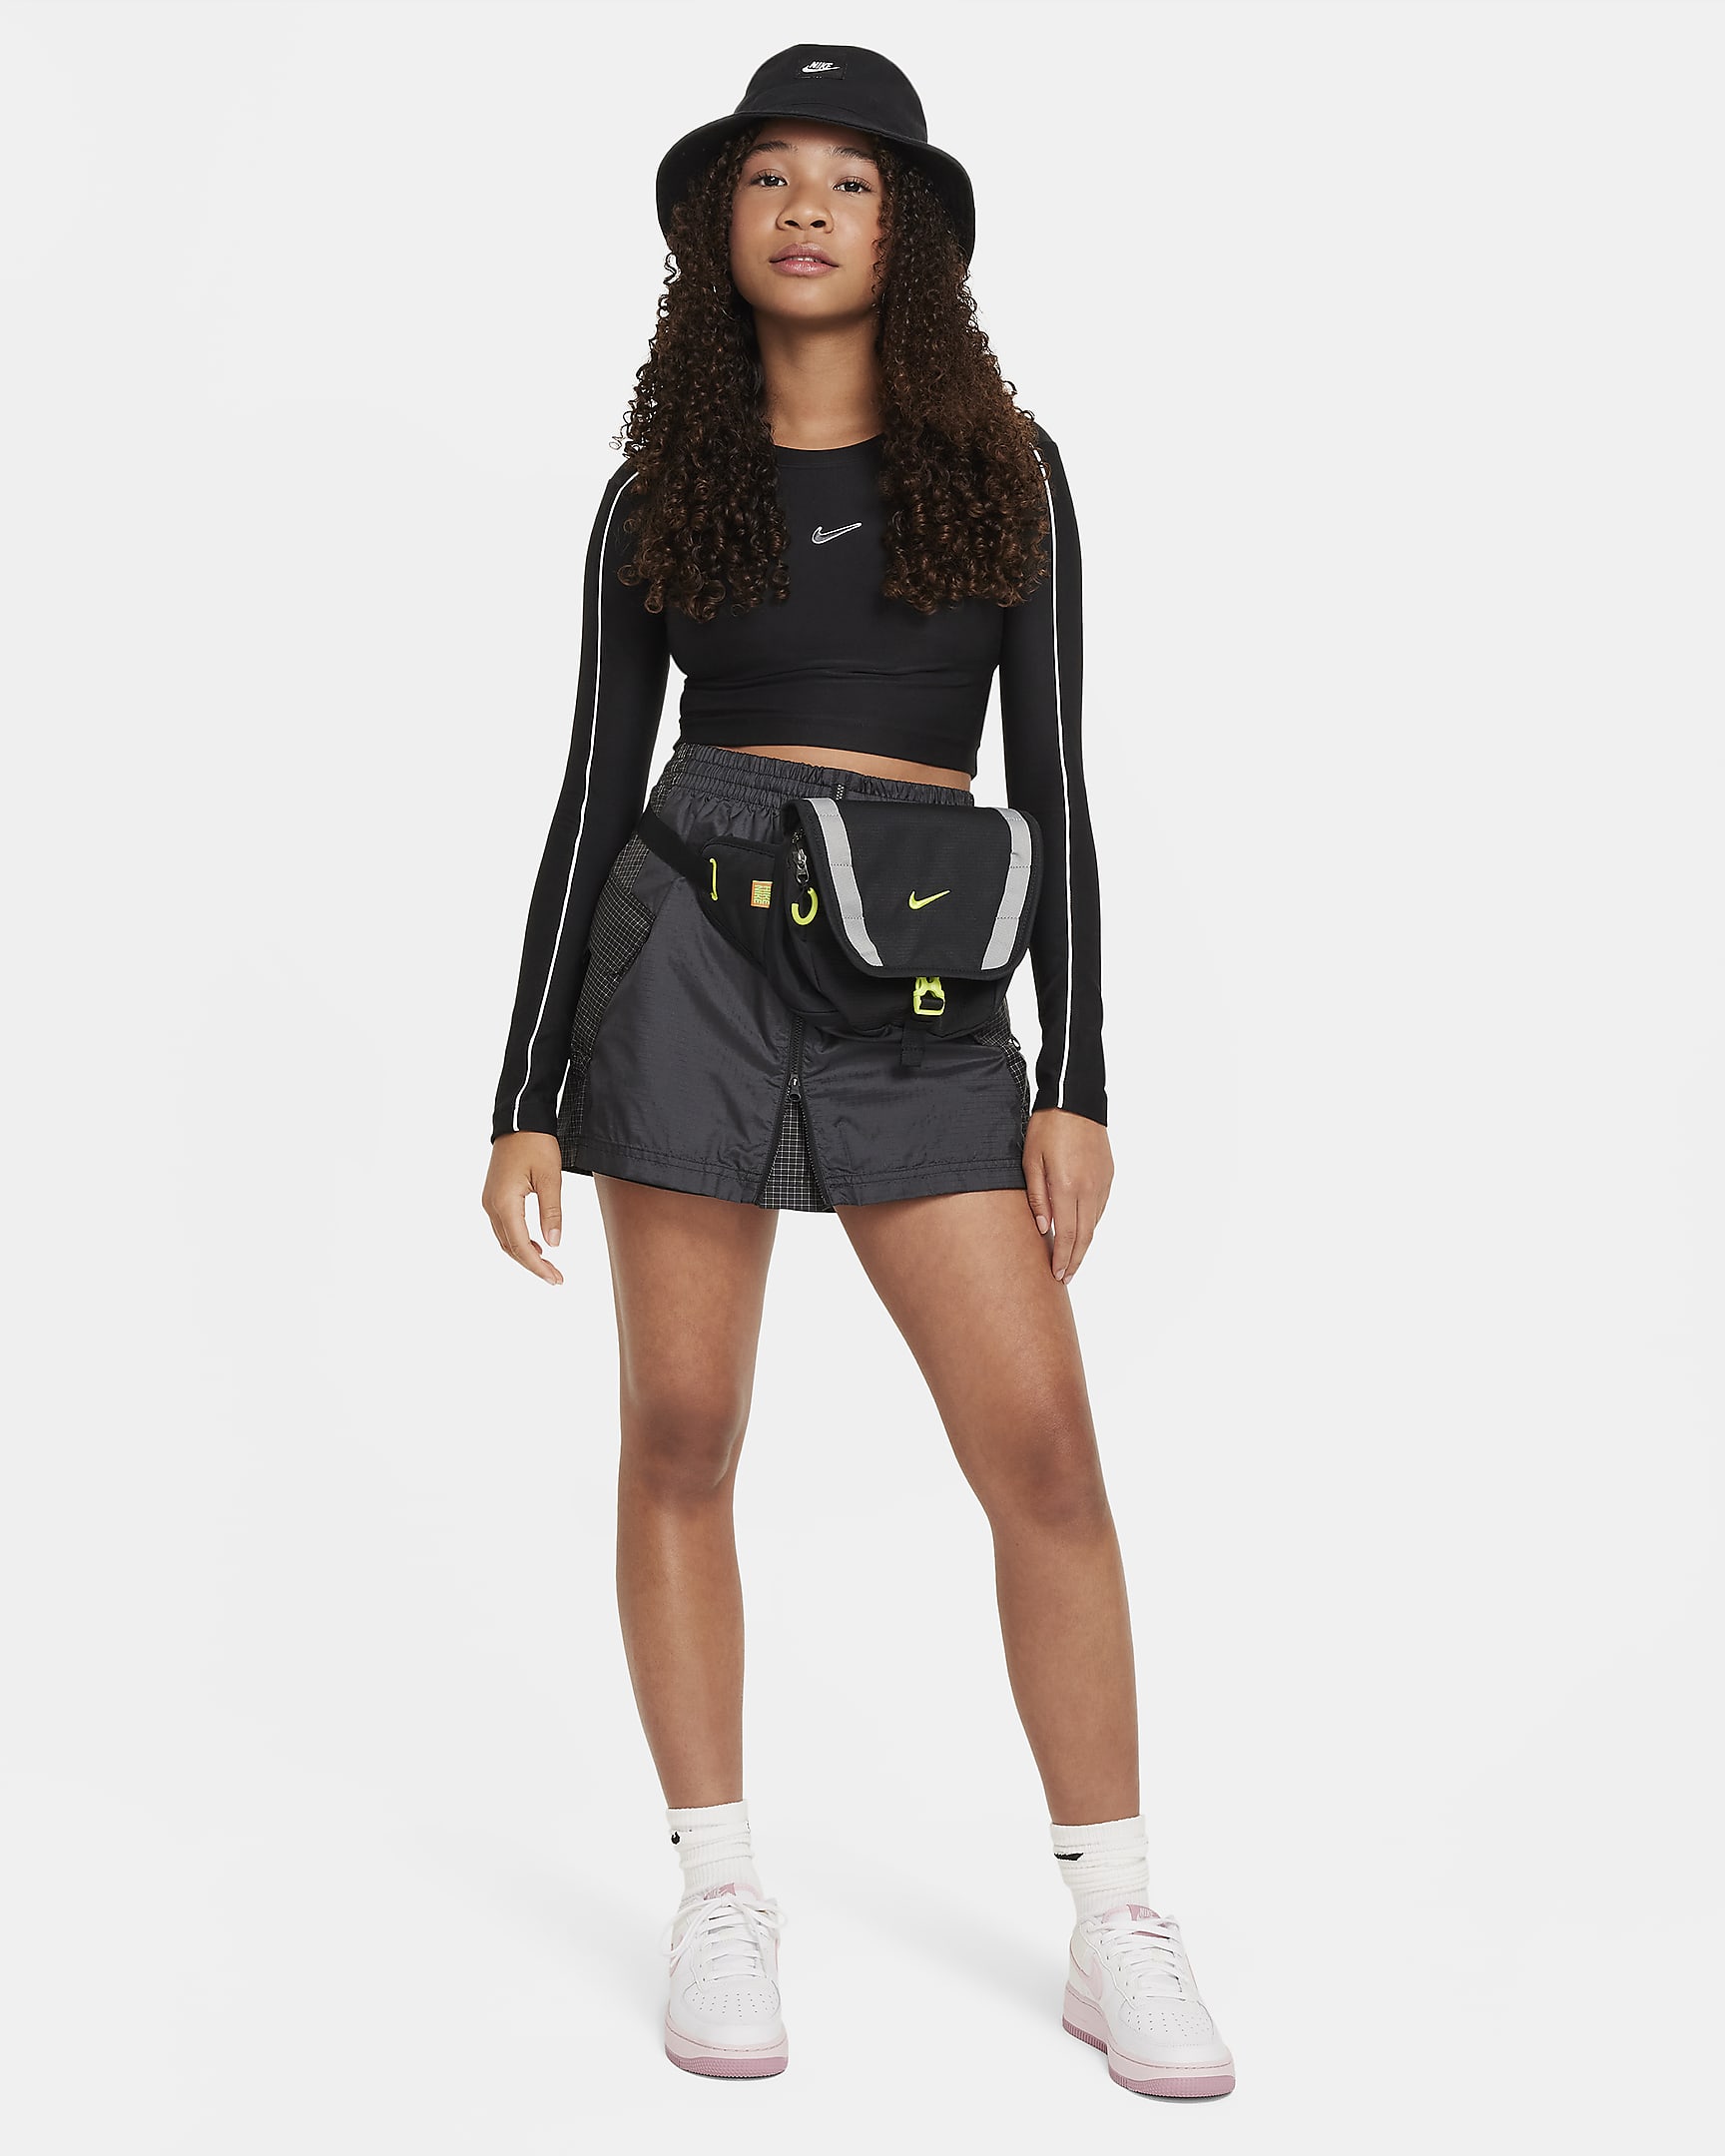 Nike Sportswear Older Kids' (Girls') Long-Sleeve Cropped Top. Nike SK